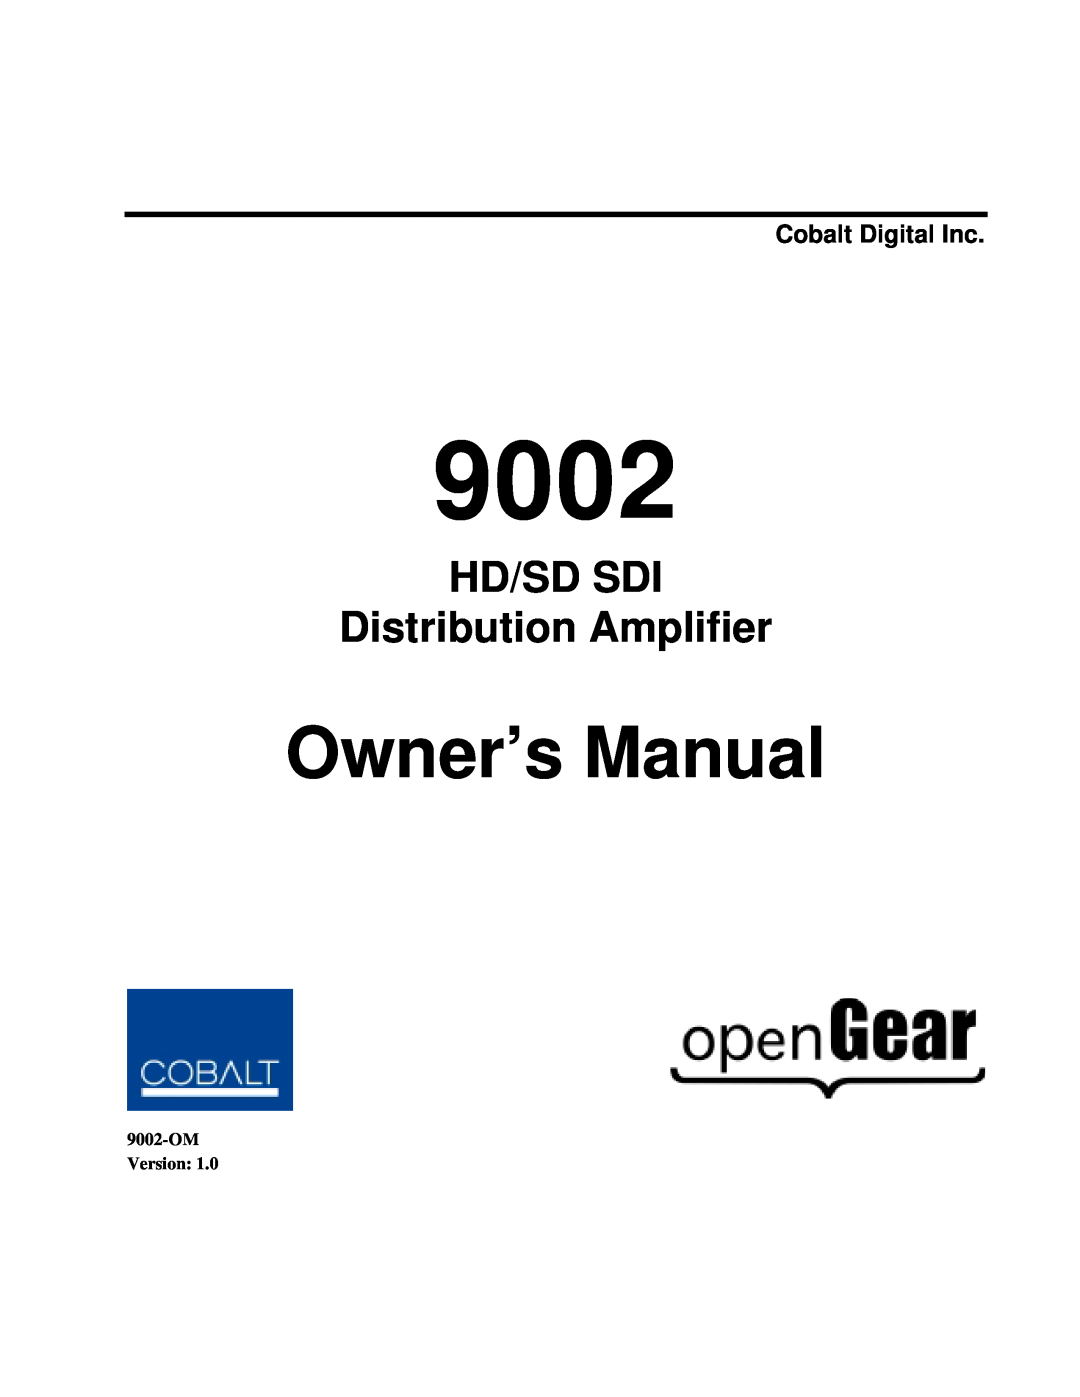 Cobalt Networks 9002 owner manual Cobalt Digital Inc, HD/SD SDI Distribution Amplifier, OMVersion 